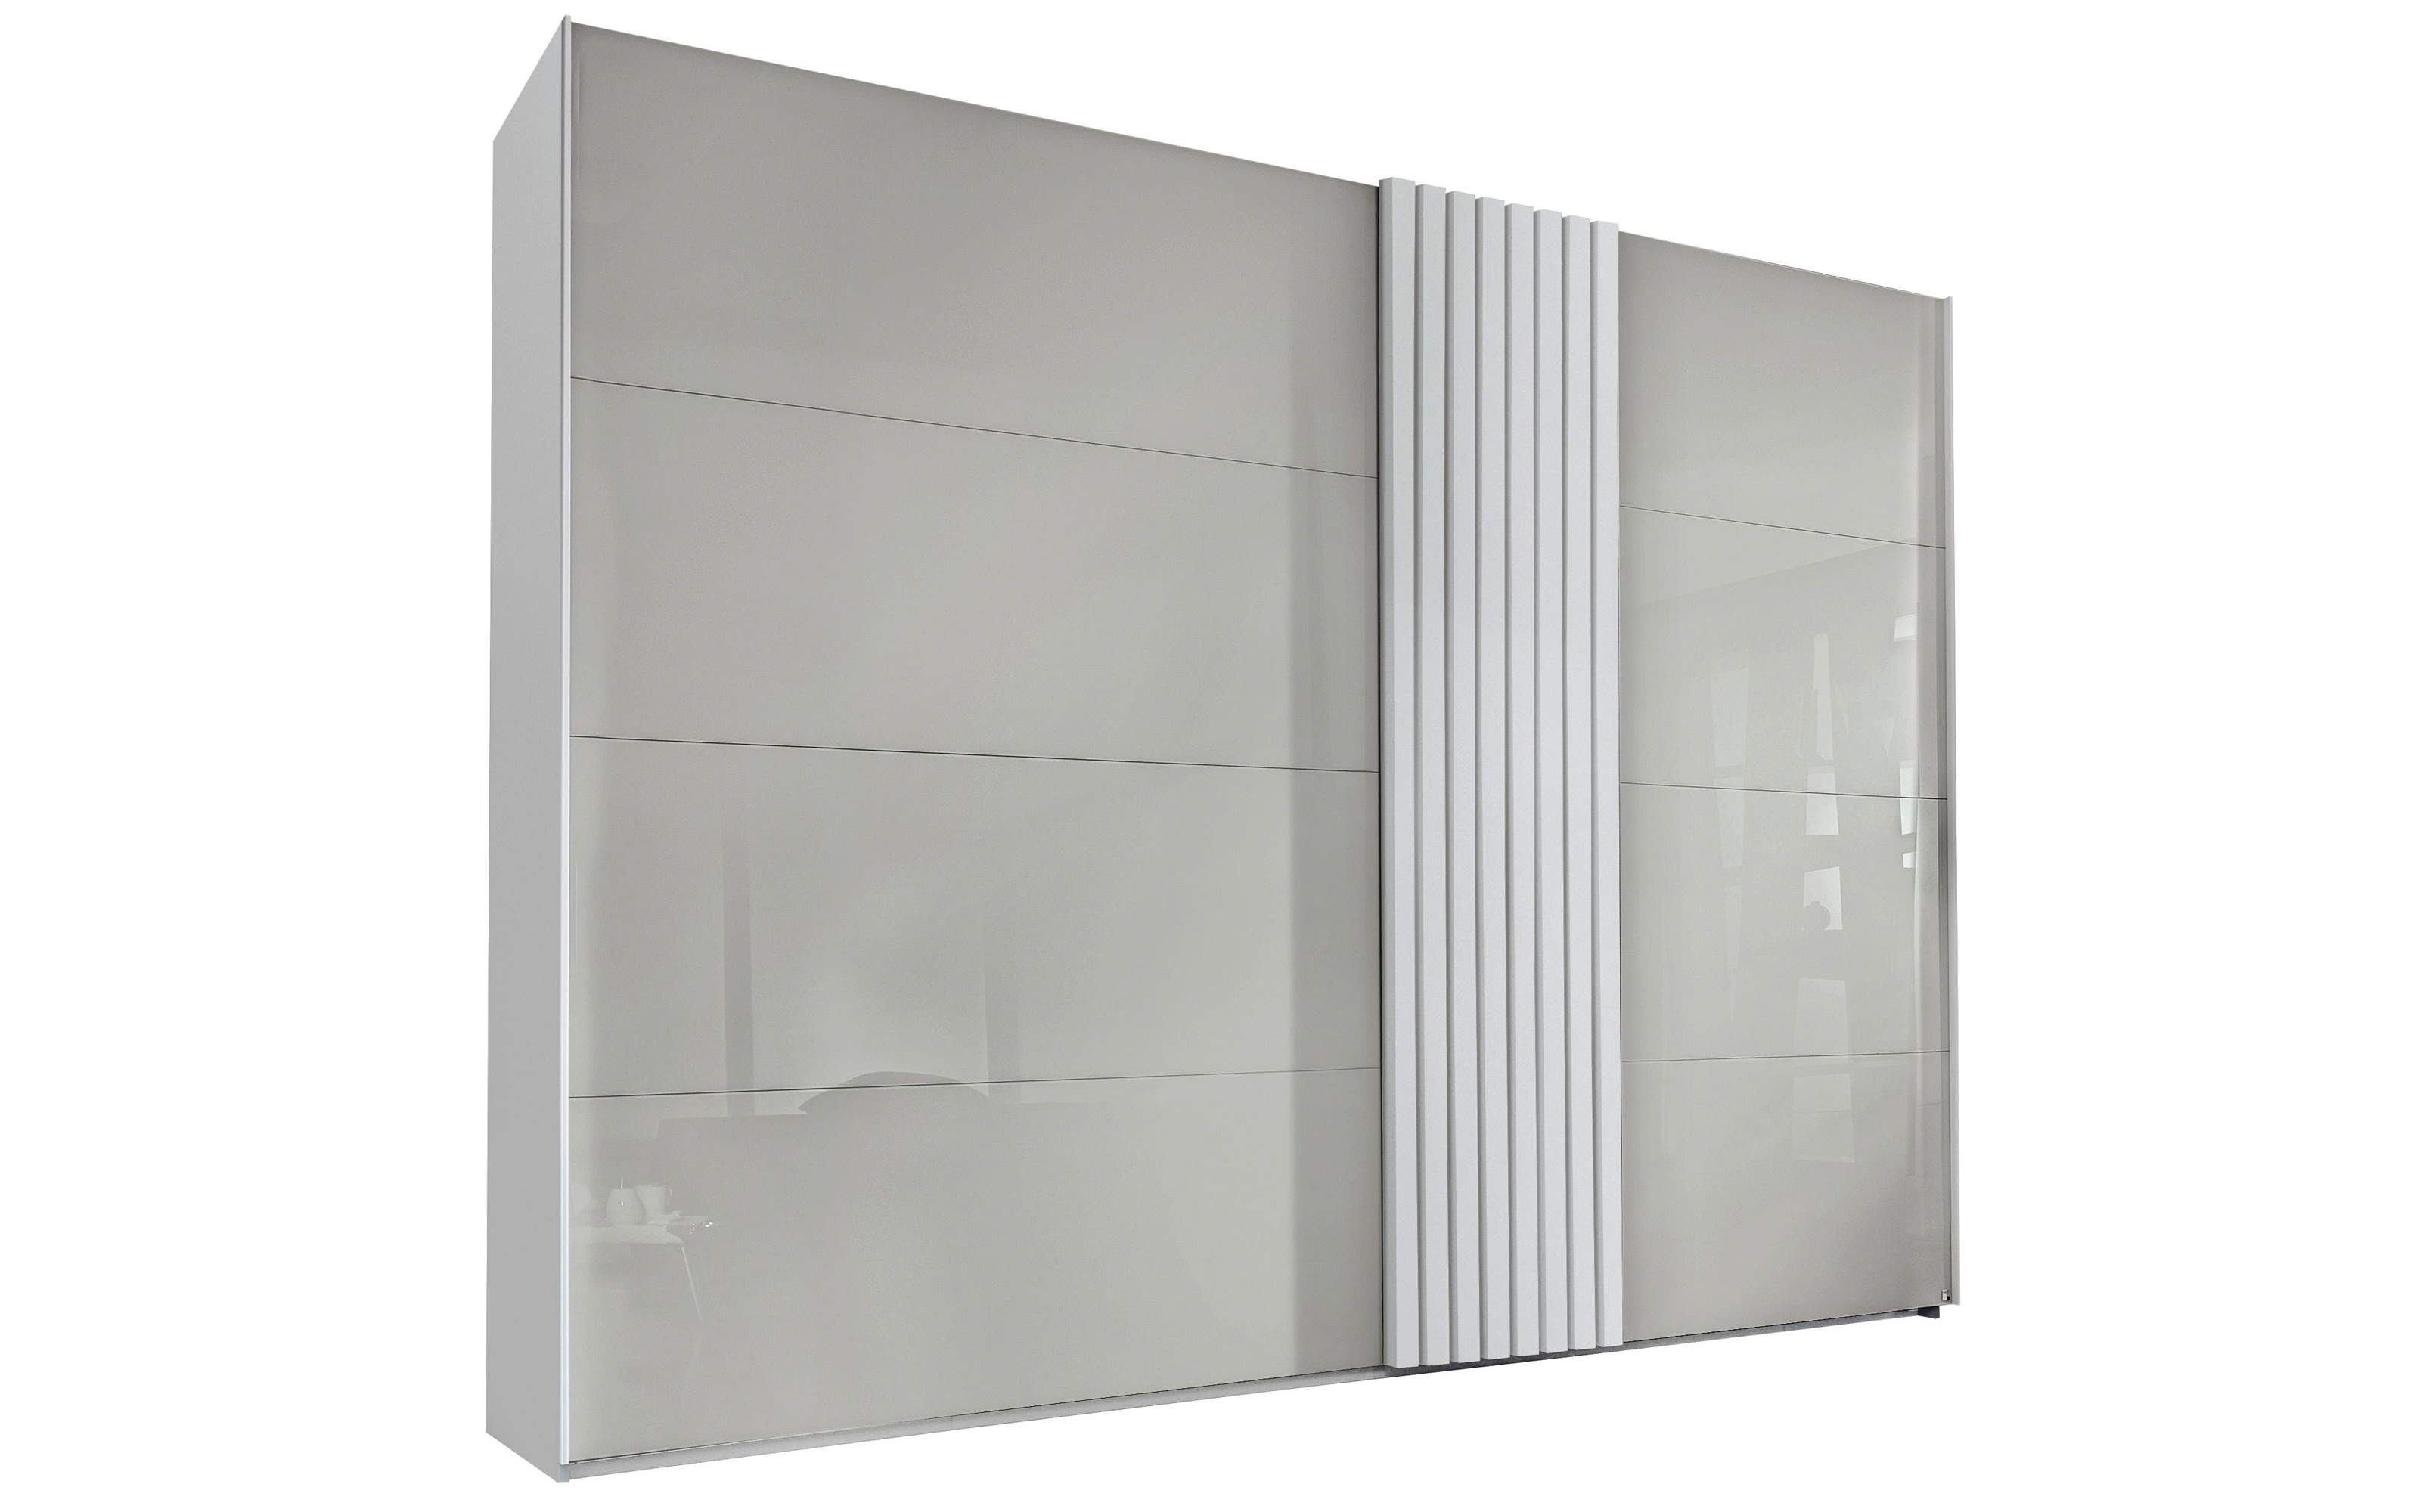 Kleiderschrank Tegio, seidengrau/weiß, 320 x 223 bei online kaufen Hardeck cm